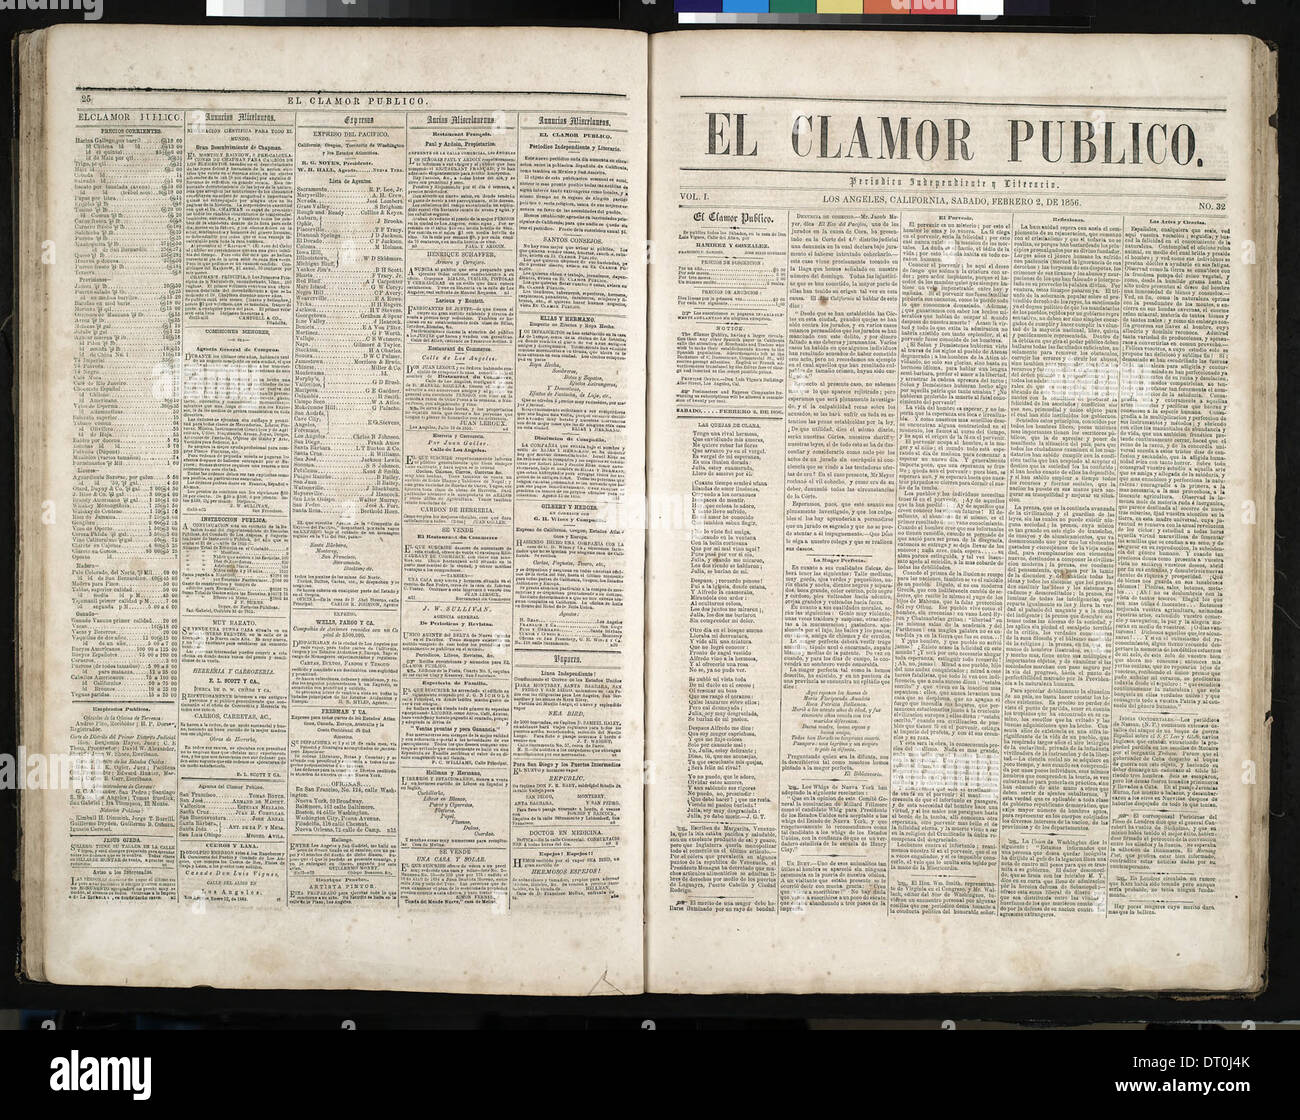 El Clamor Publico, vol. I, no. 31, Enero 26 de 1856 (ECLAM-185 Stock Photo